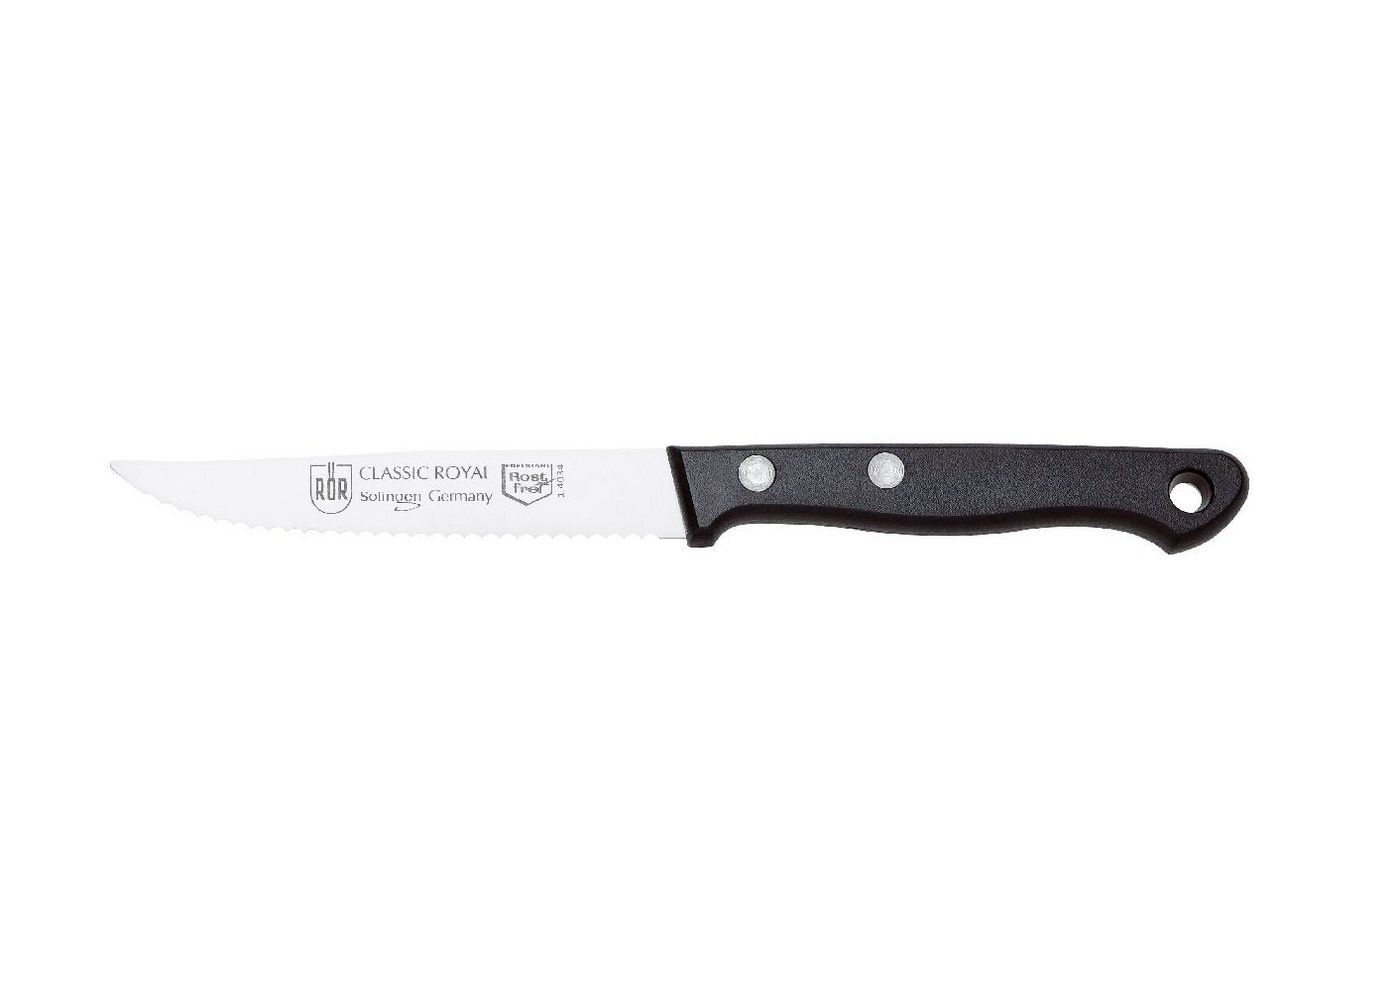 RÖR Kochmesser 10193, Classic Royal Steakmesser, hochwertiger Messerstahl - Griff mit Nieten - Made in Solingen von RÖR